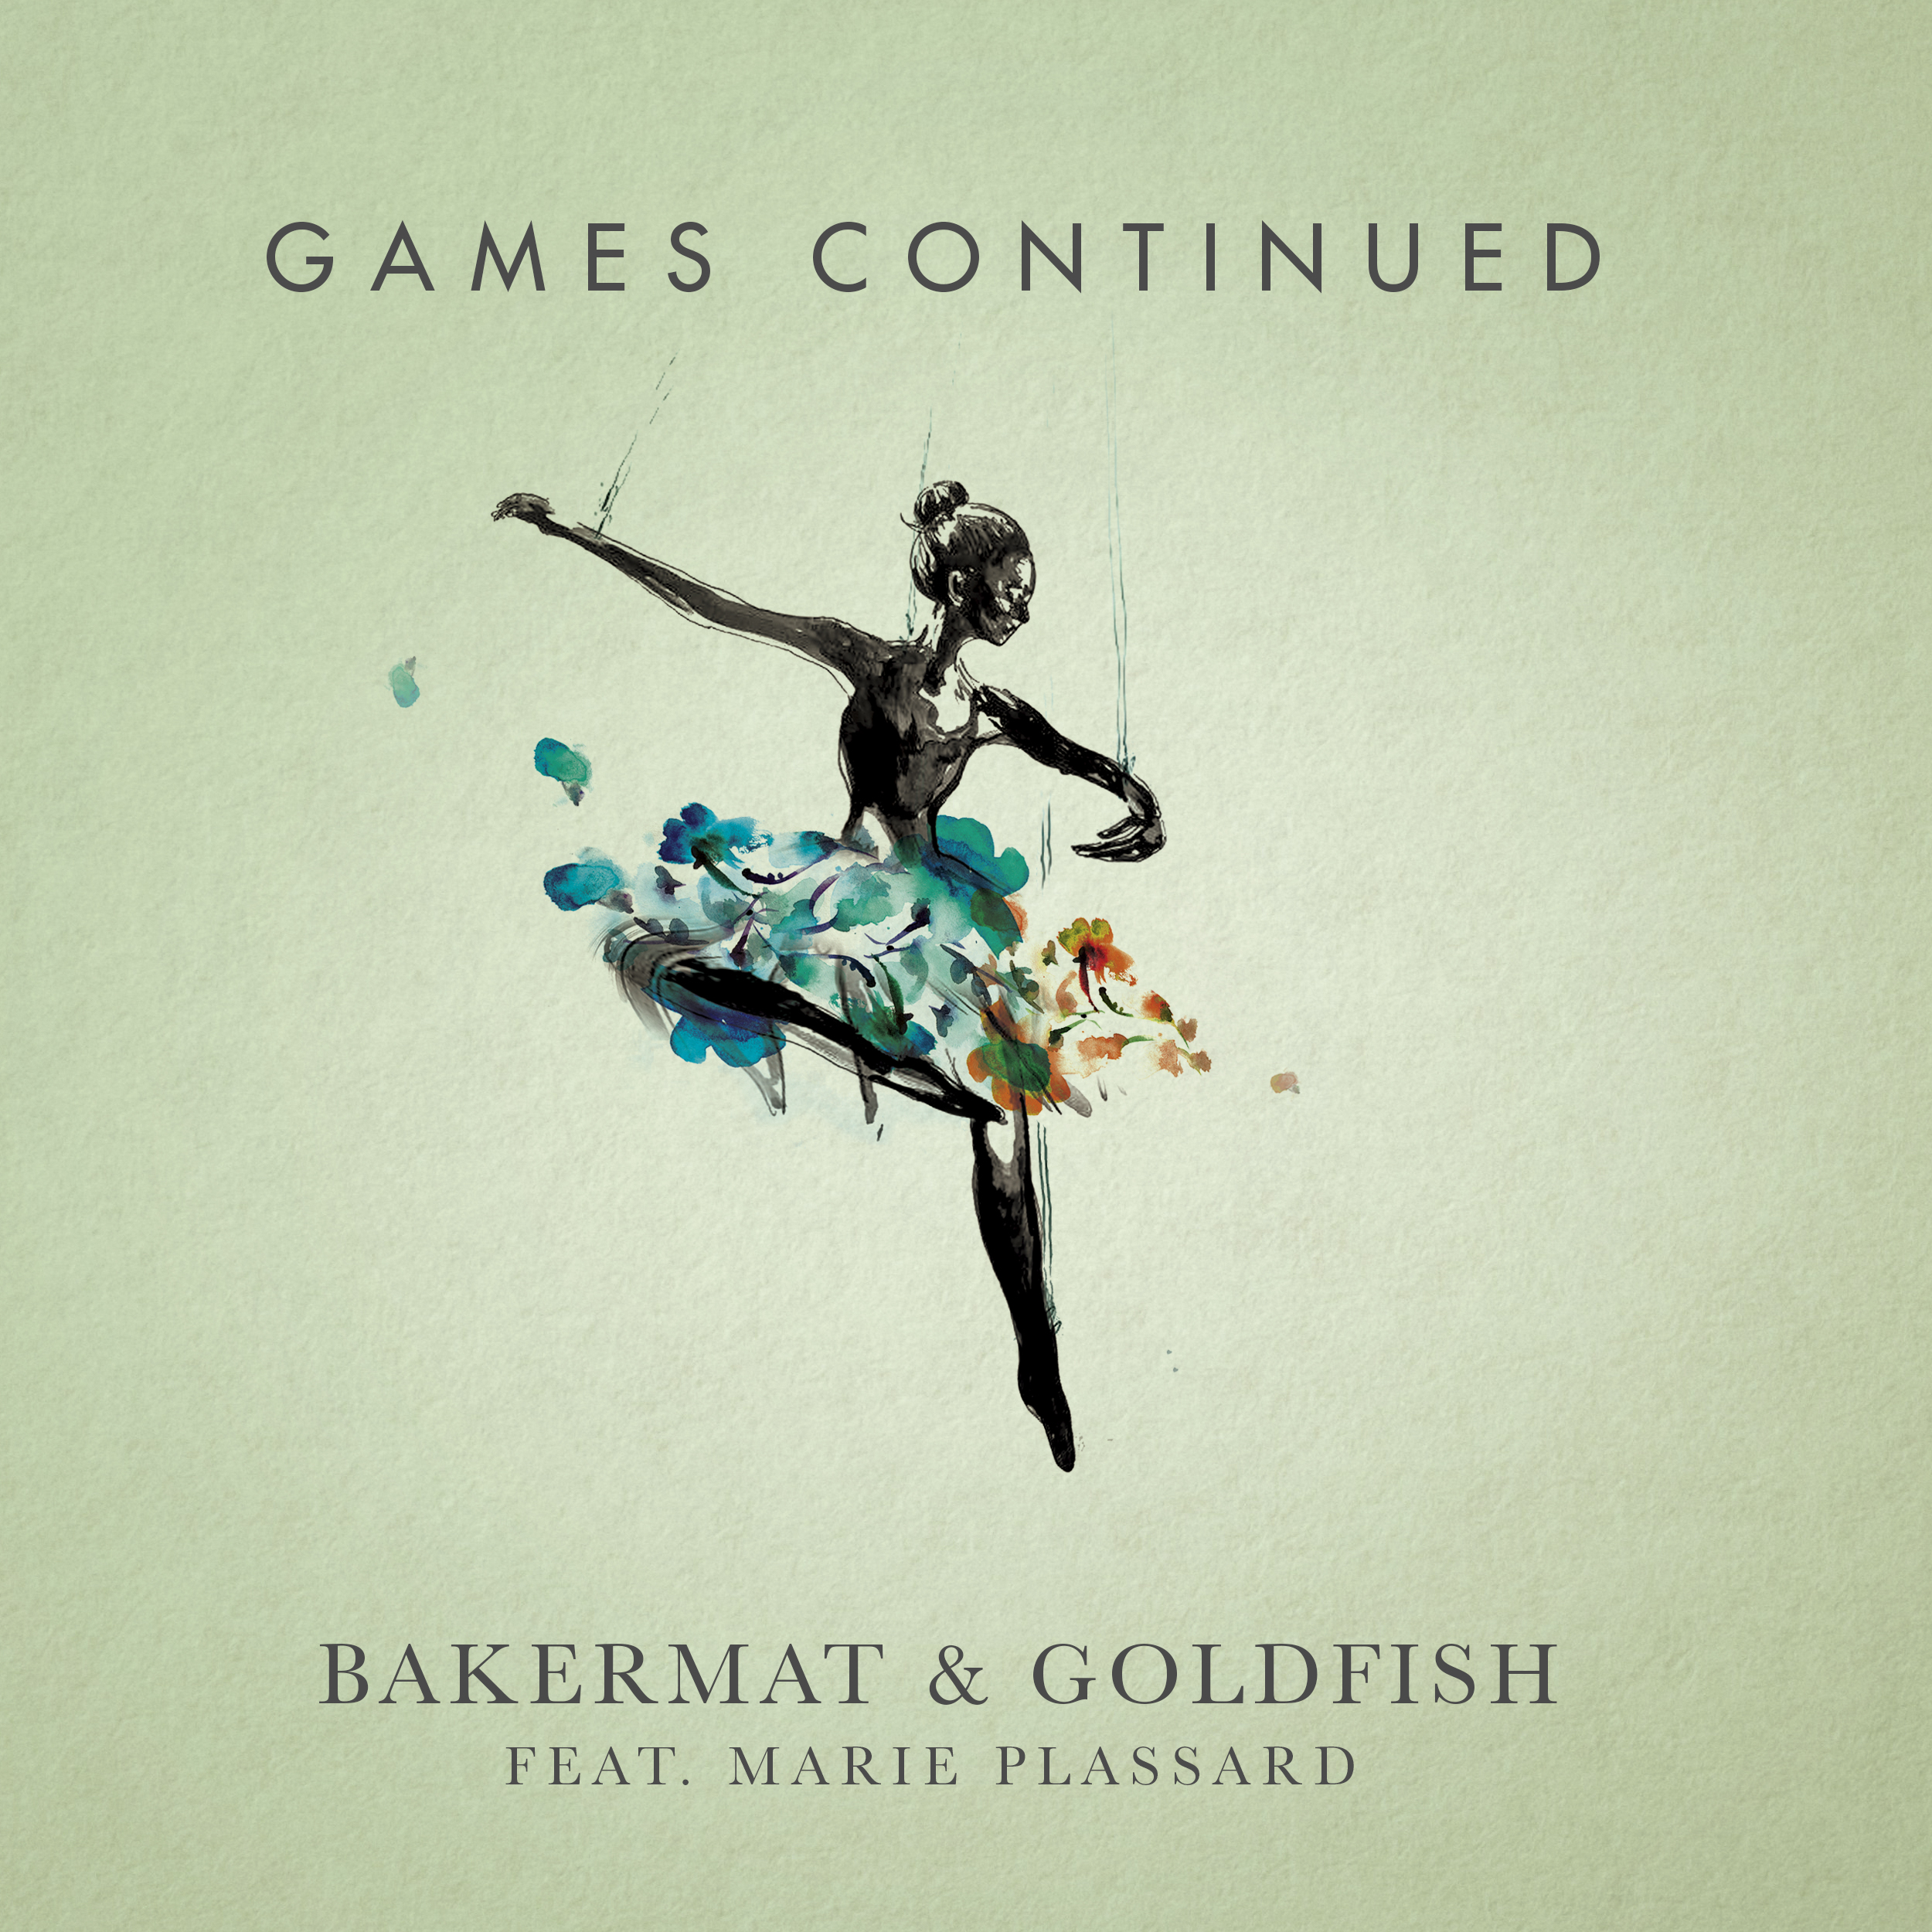 ဒေါင်းလုပ် Bakermat & Goldfish feat. Marie Plassard - Games Continued